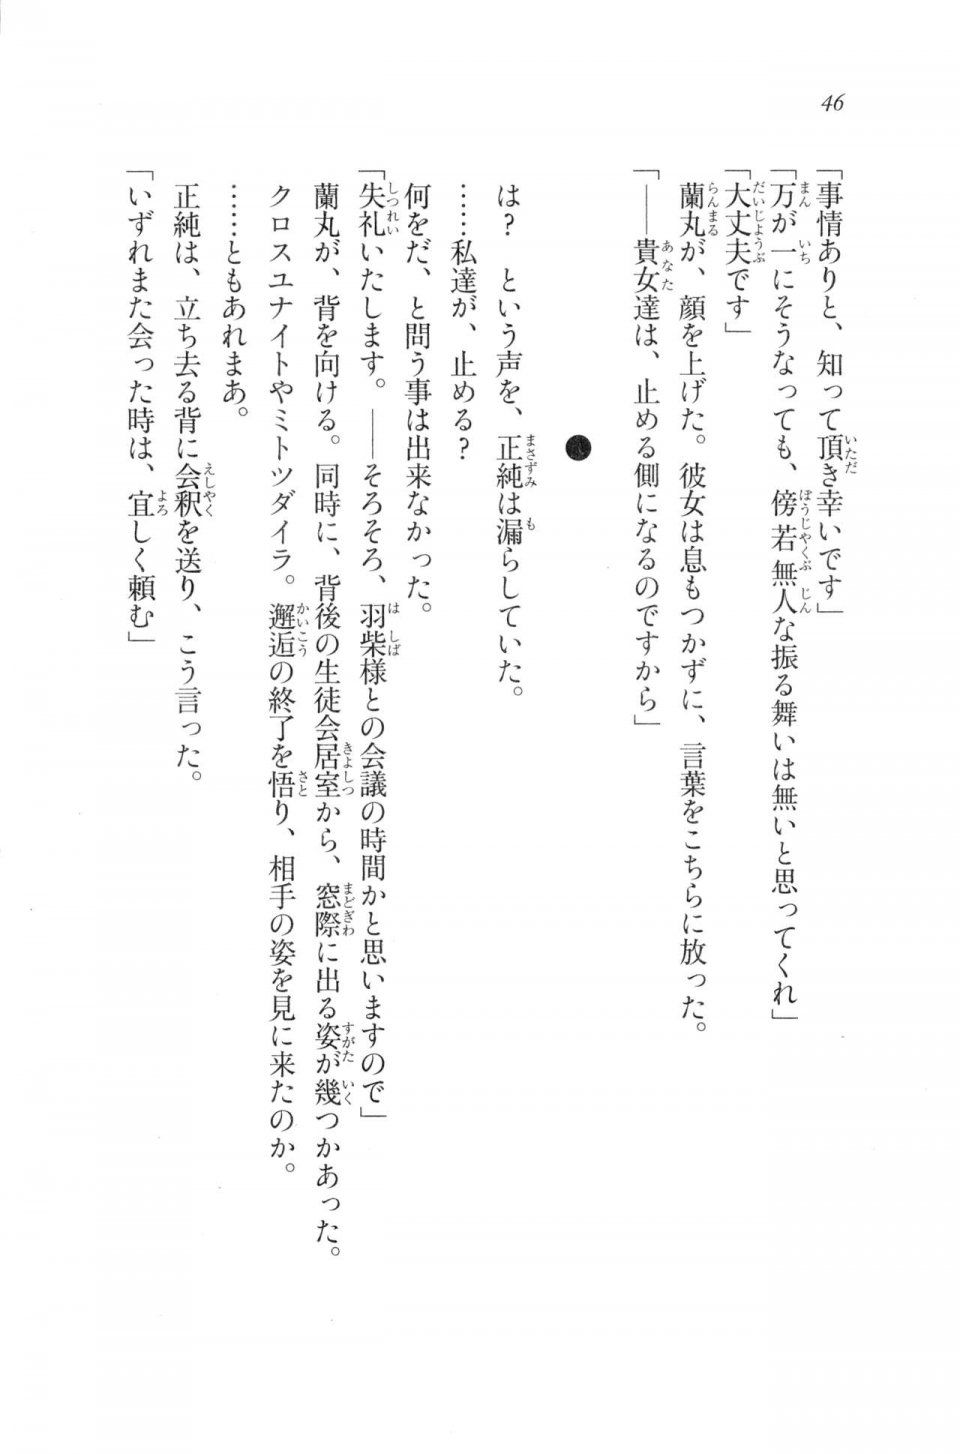 Kyoukai Senjou no Horizon LN Vol 20(8B) - Photo #46